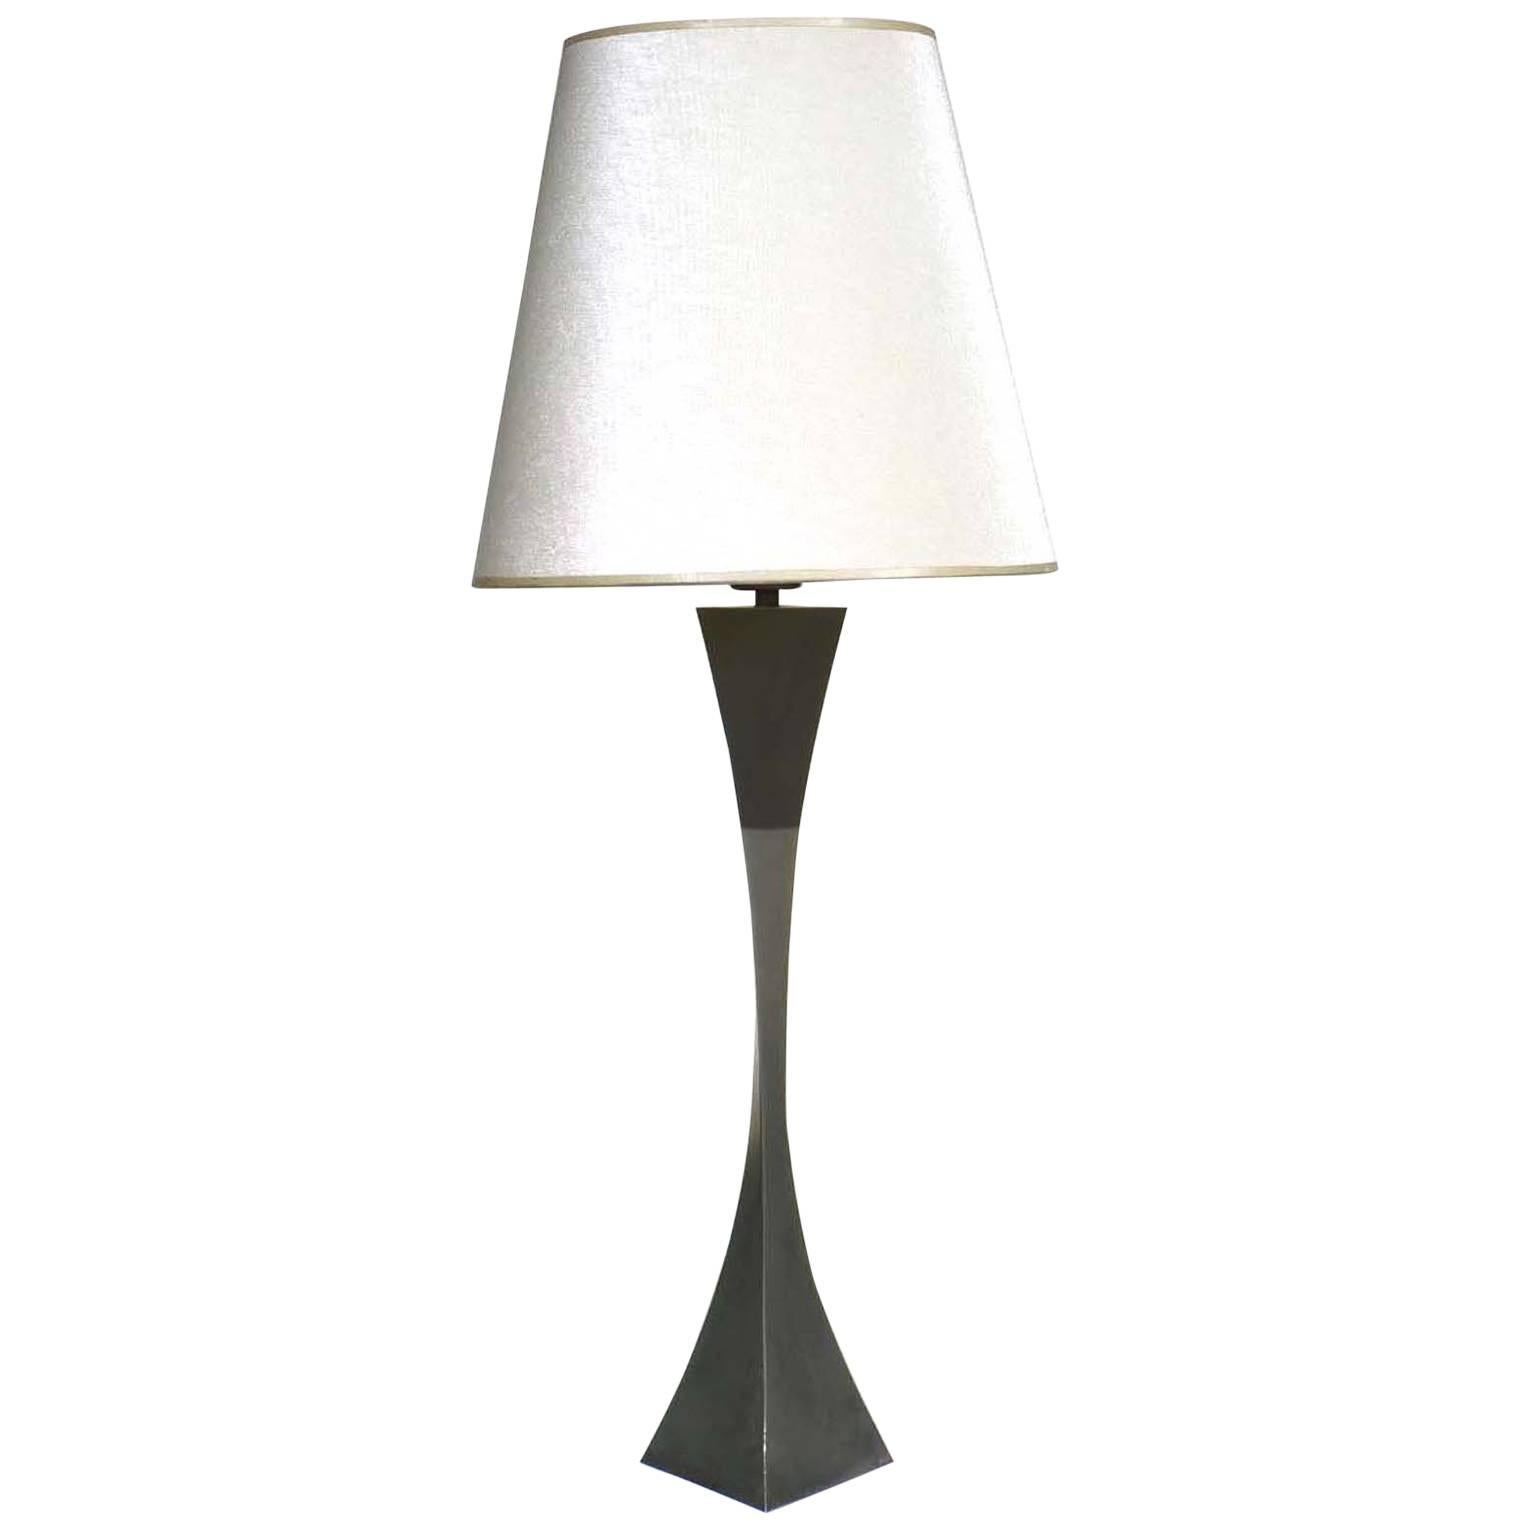 1970s Italian Design by Tonello Montagna Grillo Table Lamp